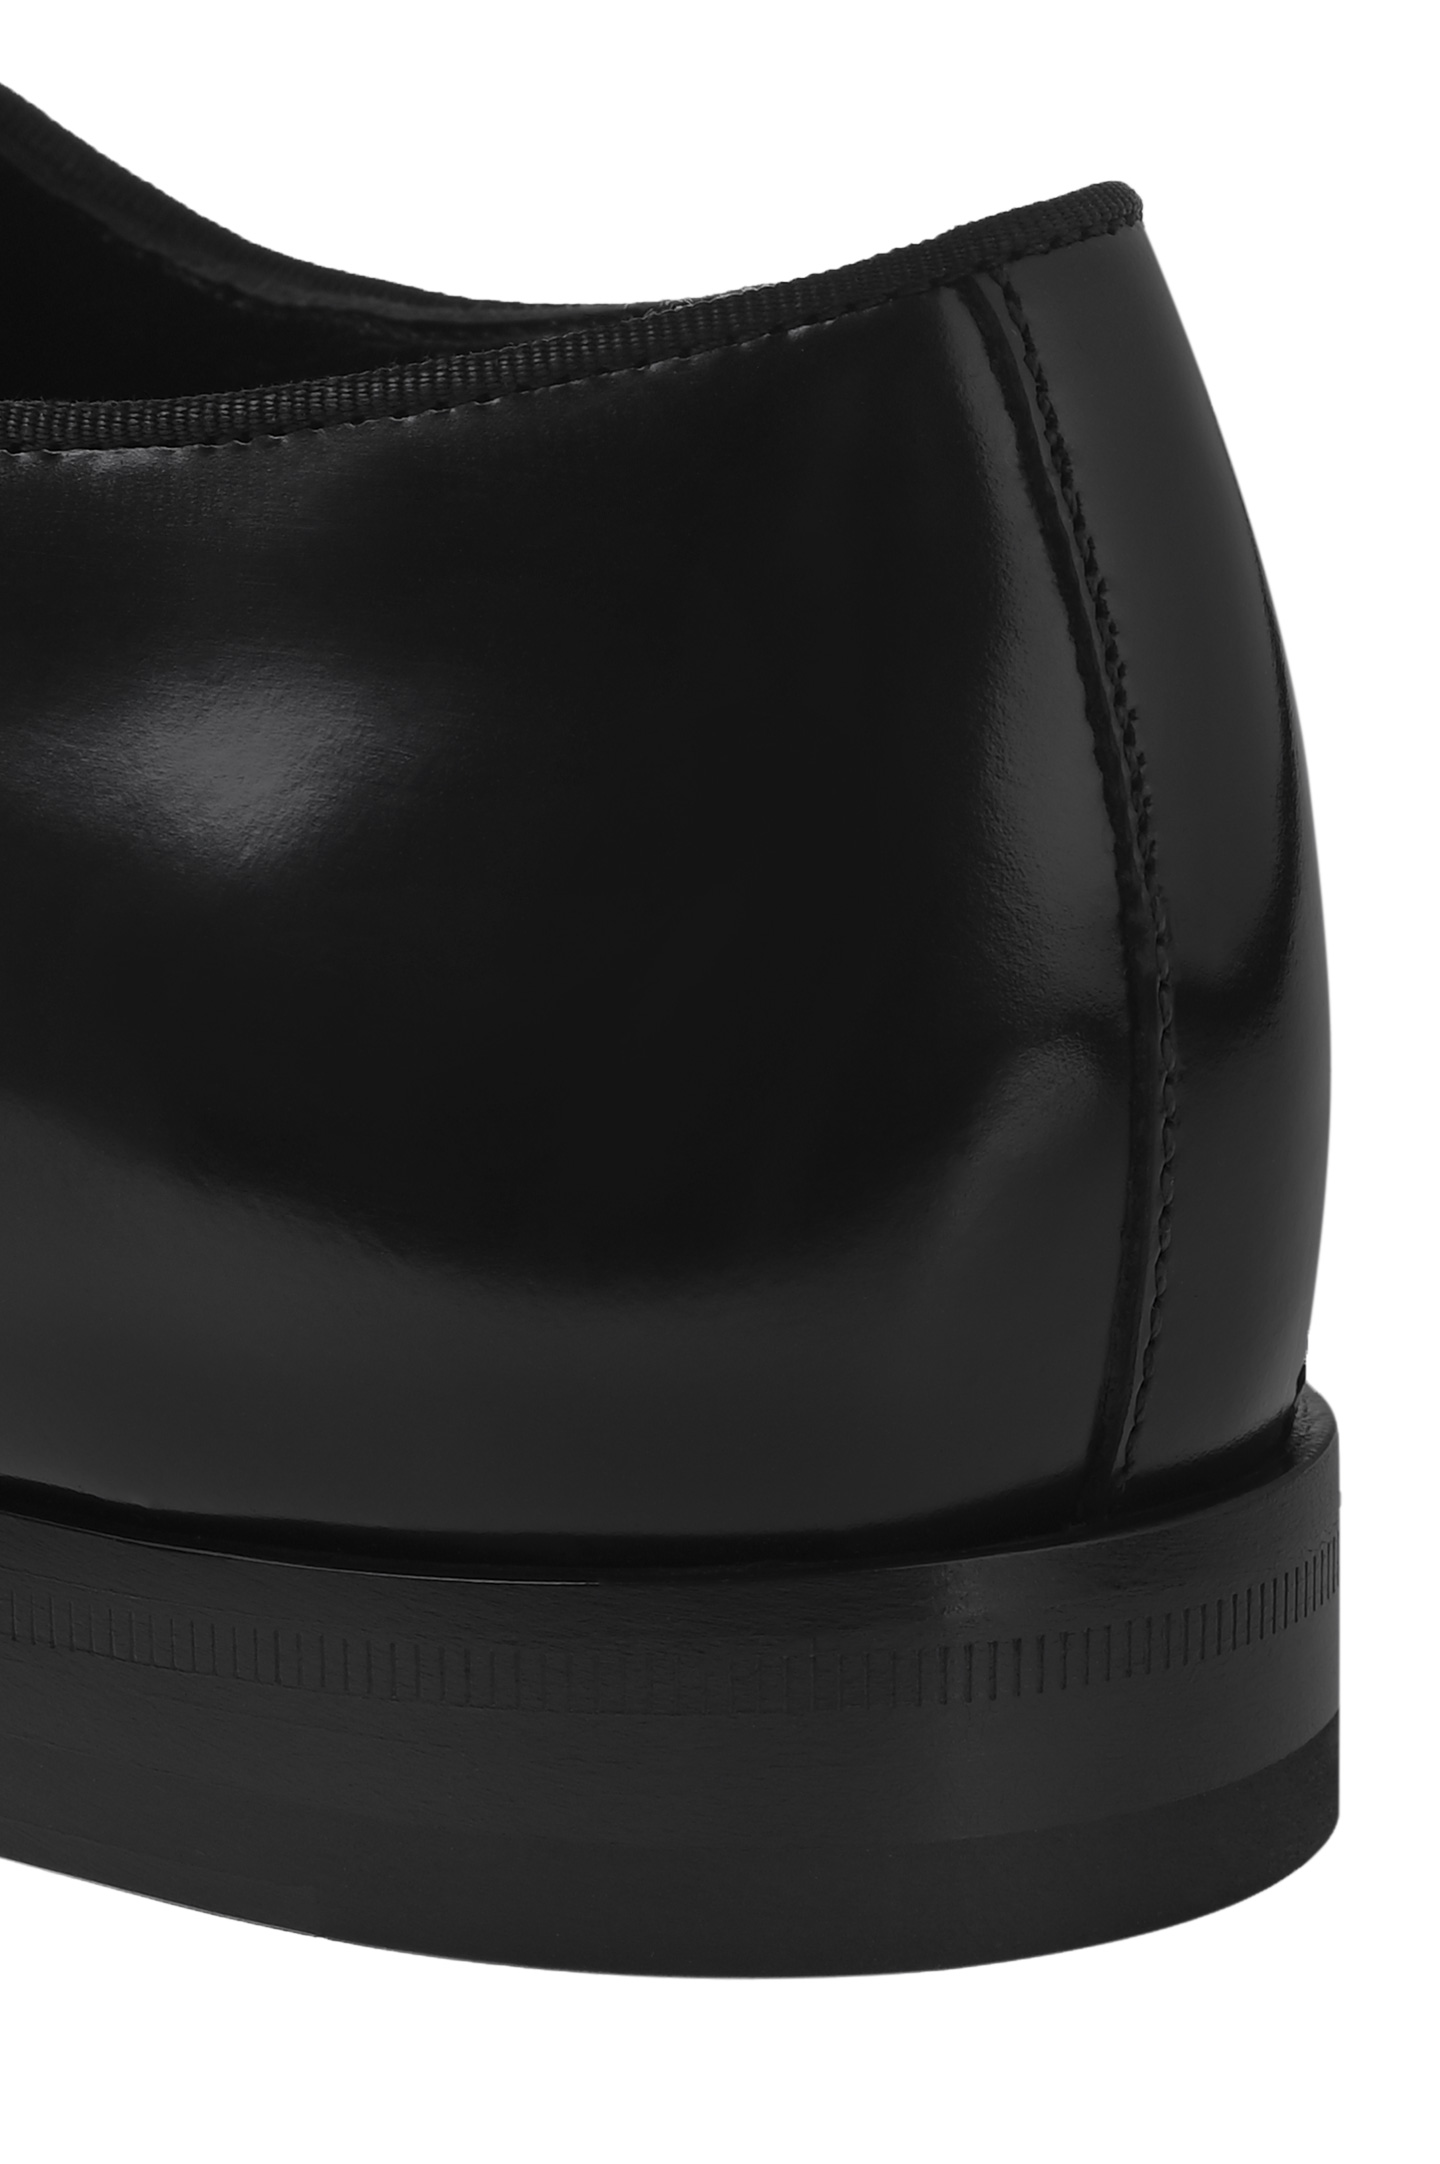 Туфли DOLCE & GABBANA A10703 A1203, цвет: Черный, Мужской